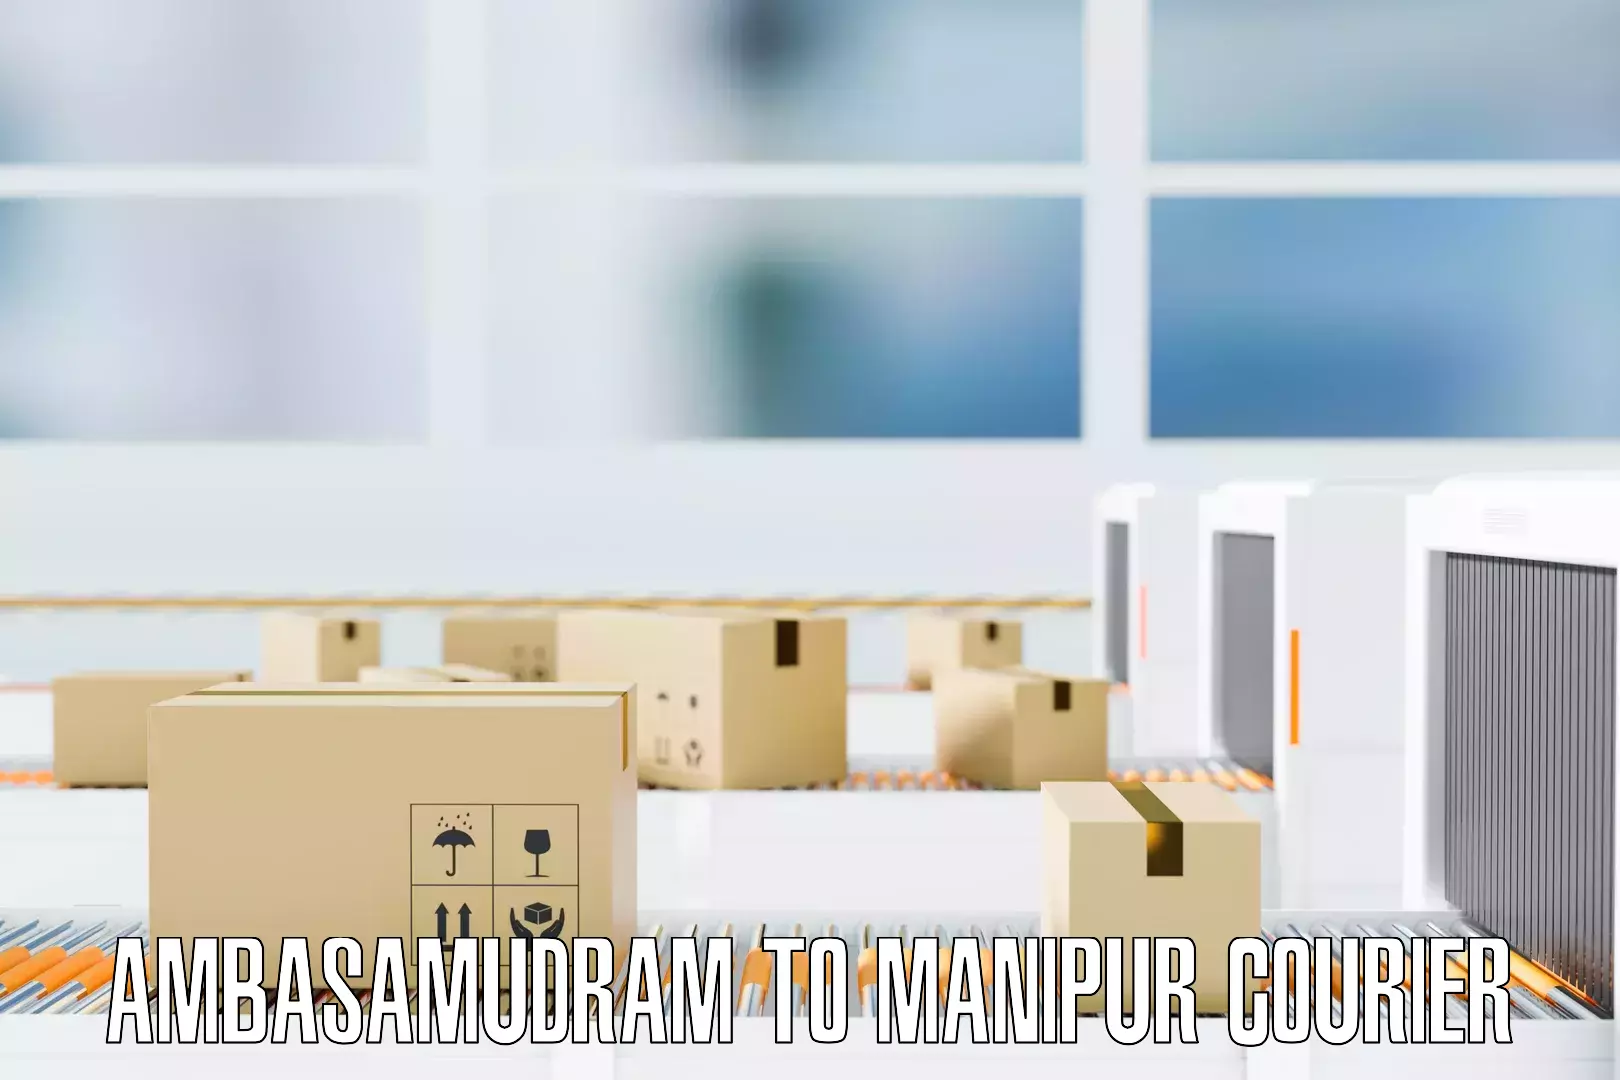 Full-service furniture transport Ambasamudram to Manipur